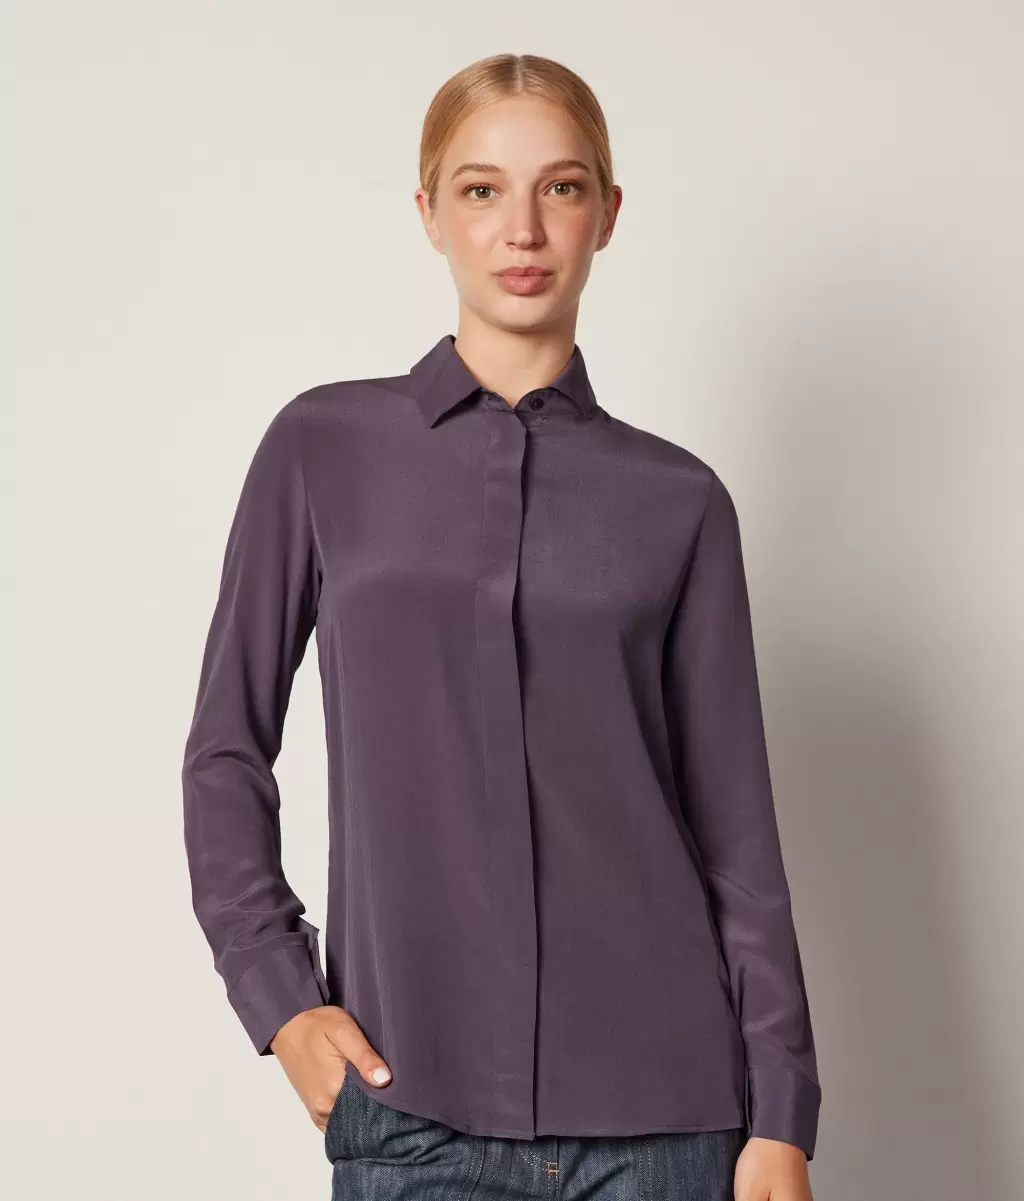 Falconeri Koszule I Bluzki Jedwabna Koszula Z Kołnierzykiem Kobieta Violet - 1